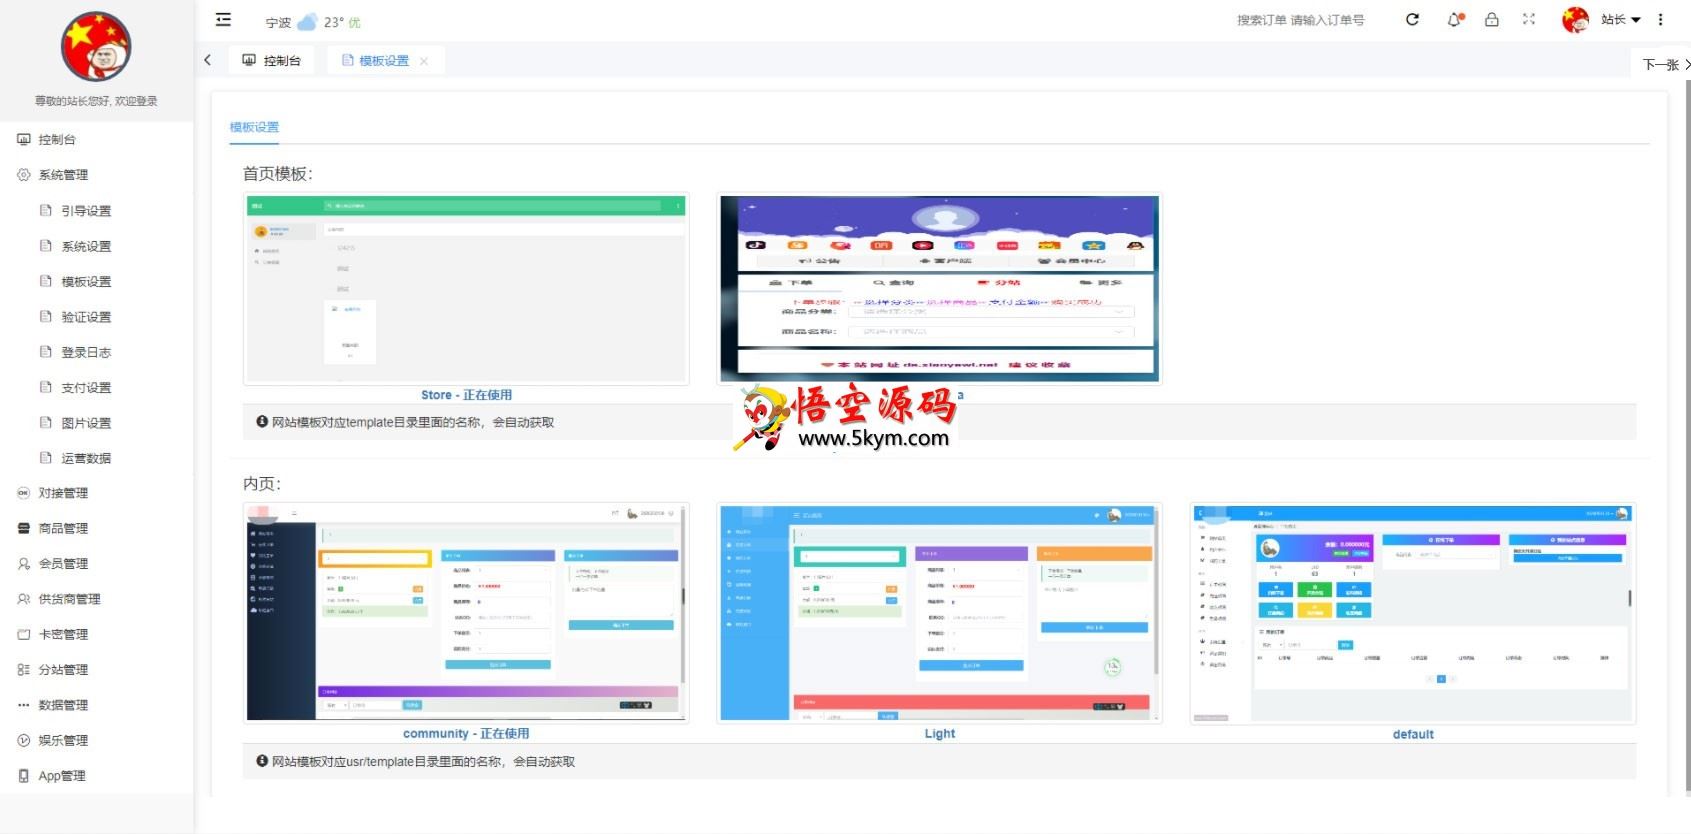 云乐购社区系统 开源版+易支付+码支付+附带 2 套精美模板